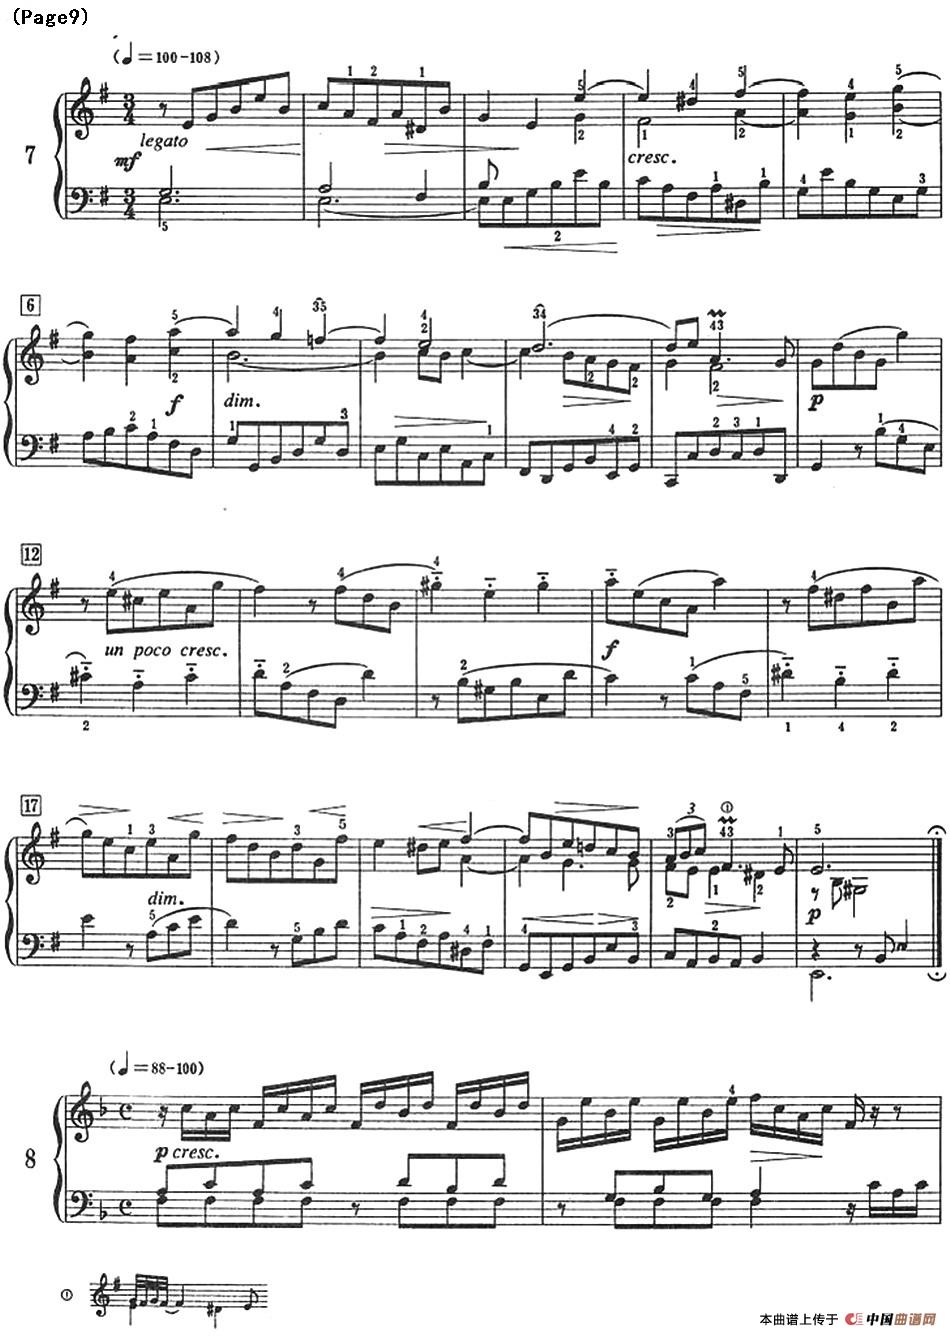 巴赫小前奏曲（NO.5-NO.8）(1)_Bach Little Prelude and Fugue_页面_14.jpg